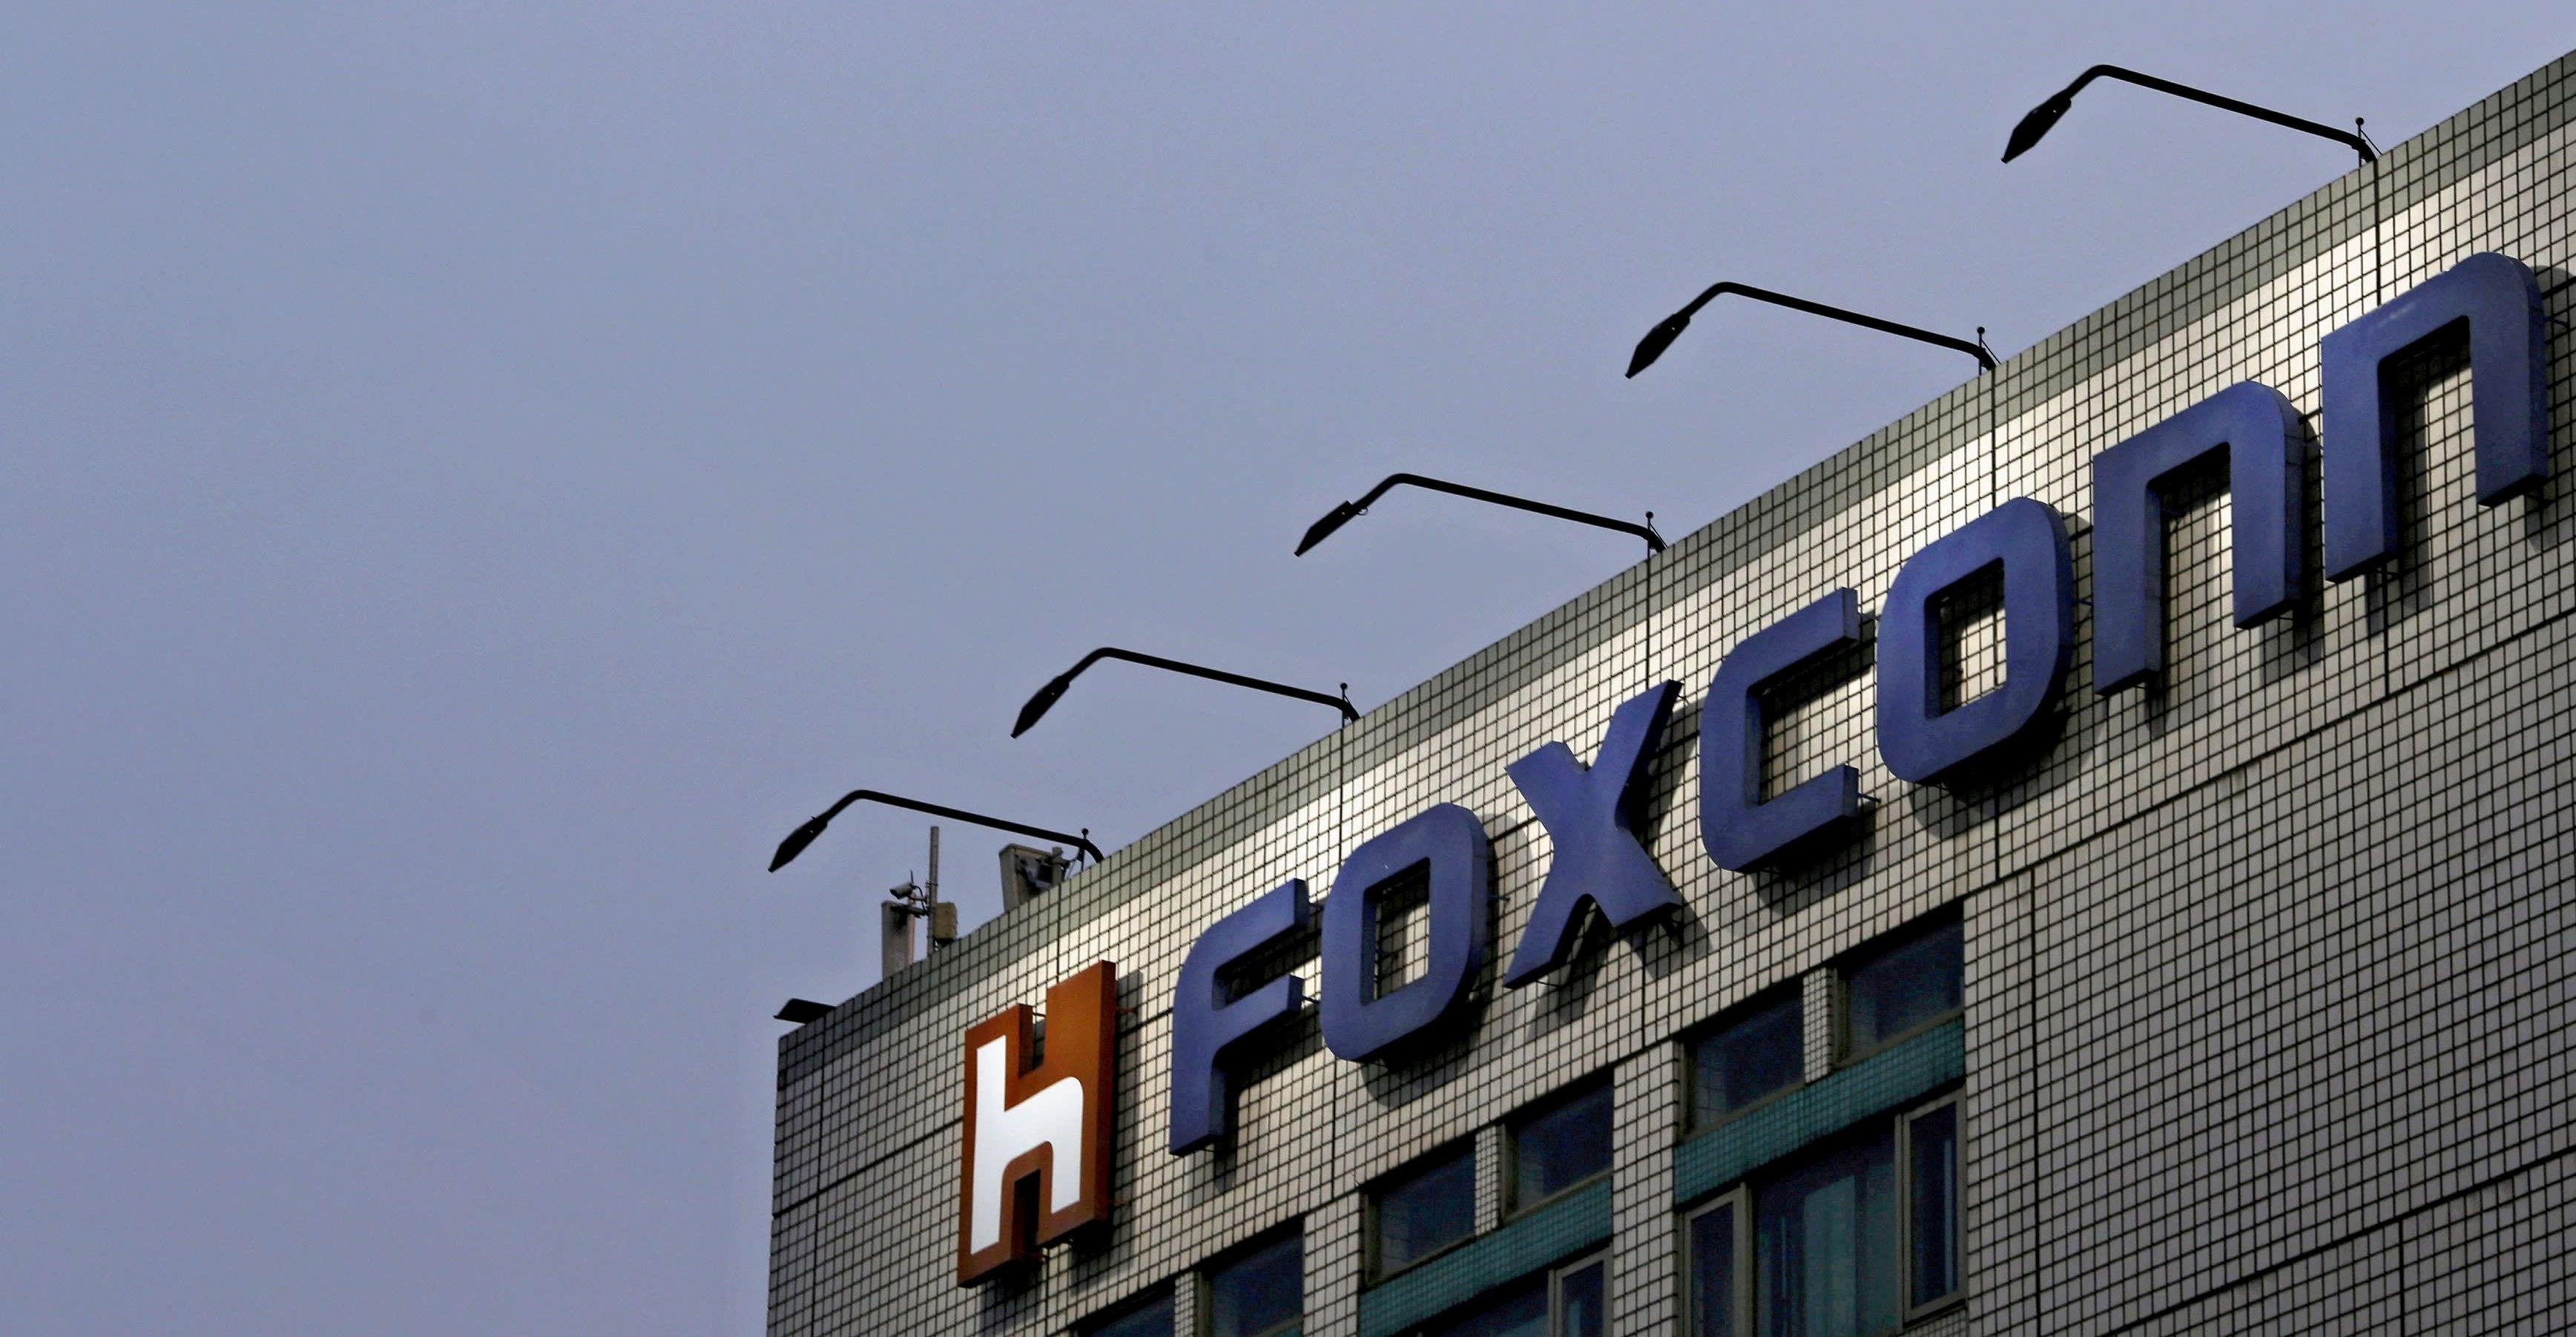 Foxconn començarà a operar a l'Índia: prova de fabricació per a iPhones al voltant de la cantonada